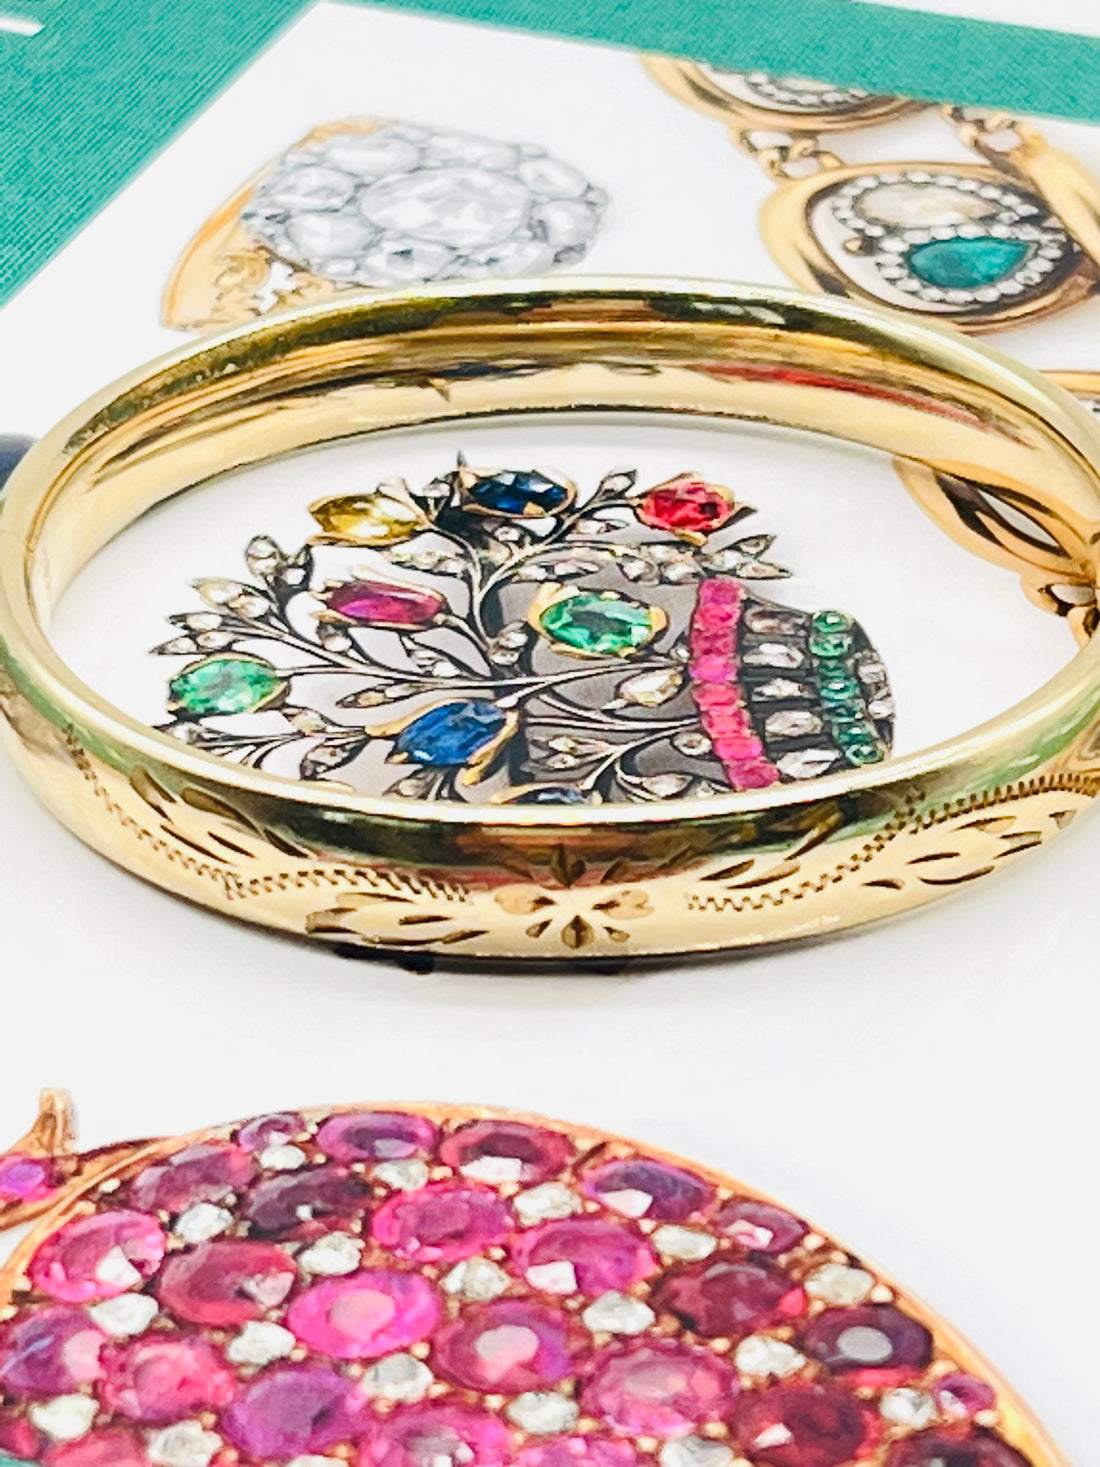 Victorian gold filled bangle bracelet  with floral design.